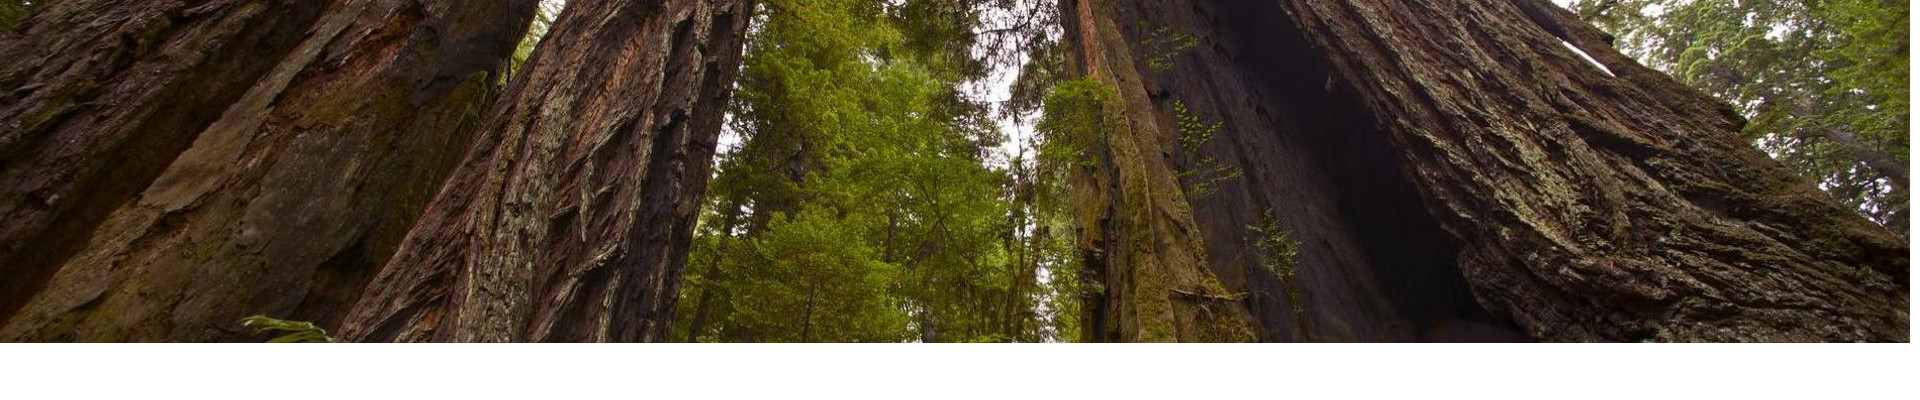 PUHASTUSKODA OÜ tegeleb metsamajandusega, pakkudes mitmekülgseid teenuseid alates metsa kaitsest ja müügist kuni uuendustegevusteni ja teadusuuringuteni.